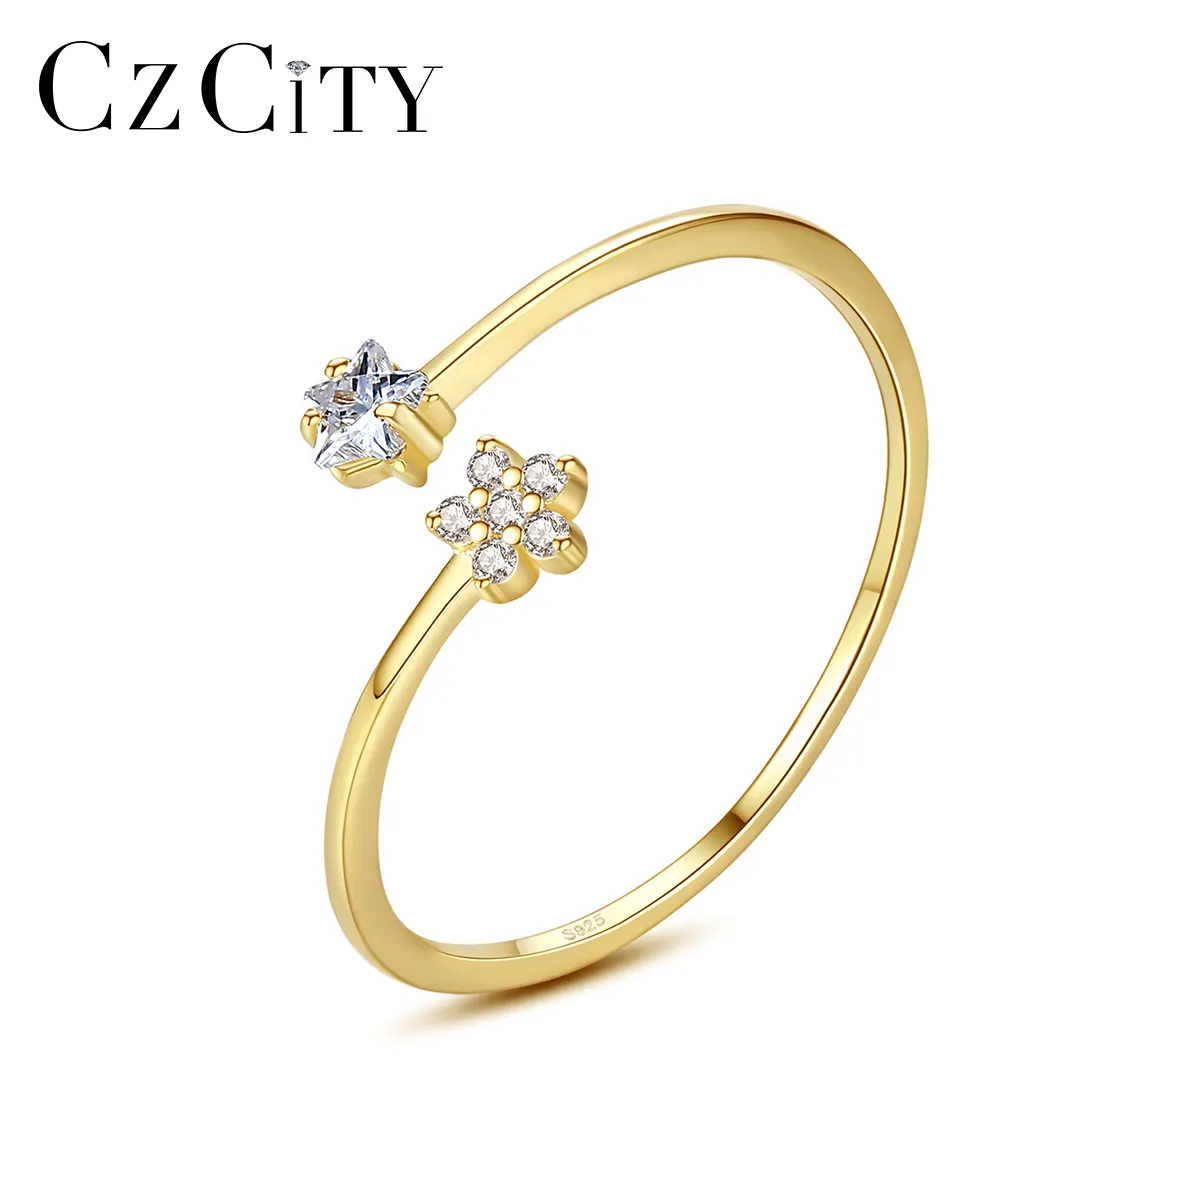 CZCITY 2021 Design Silber Offener Ring 925 Sterling Silber Sterns chmuck Zirkonia Diamant Verstellbarer Ring für Mädchen Verlobung